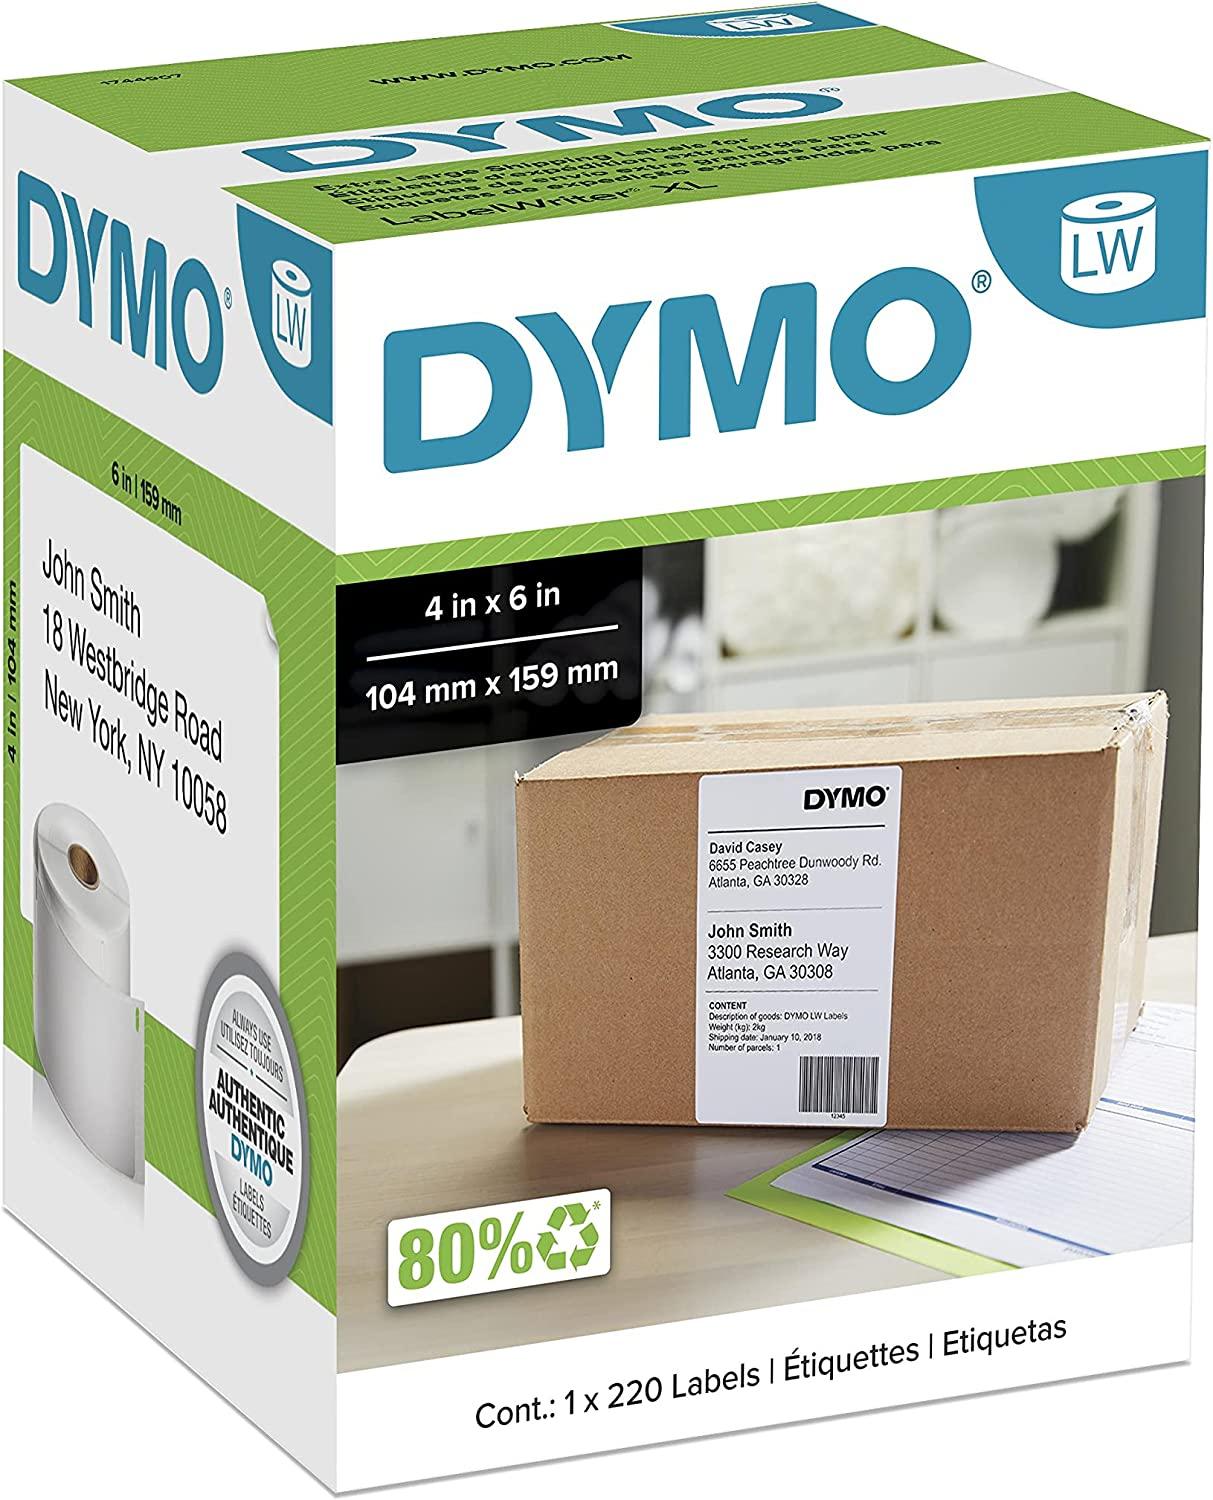 Rolls All-Purpose Labels Dymo DYMO LW 1744907 ORANGE 4XL 4x6 4"x6" - 40 FREE SHIP 